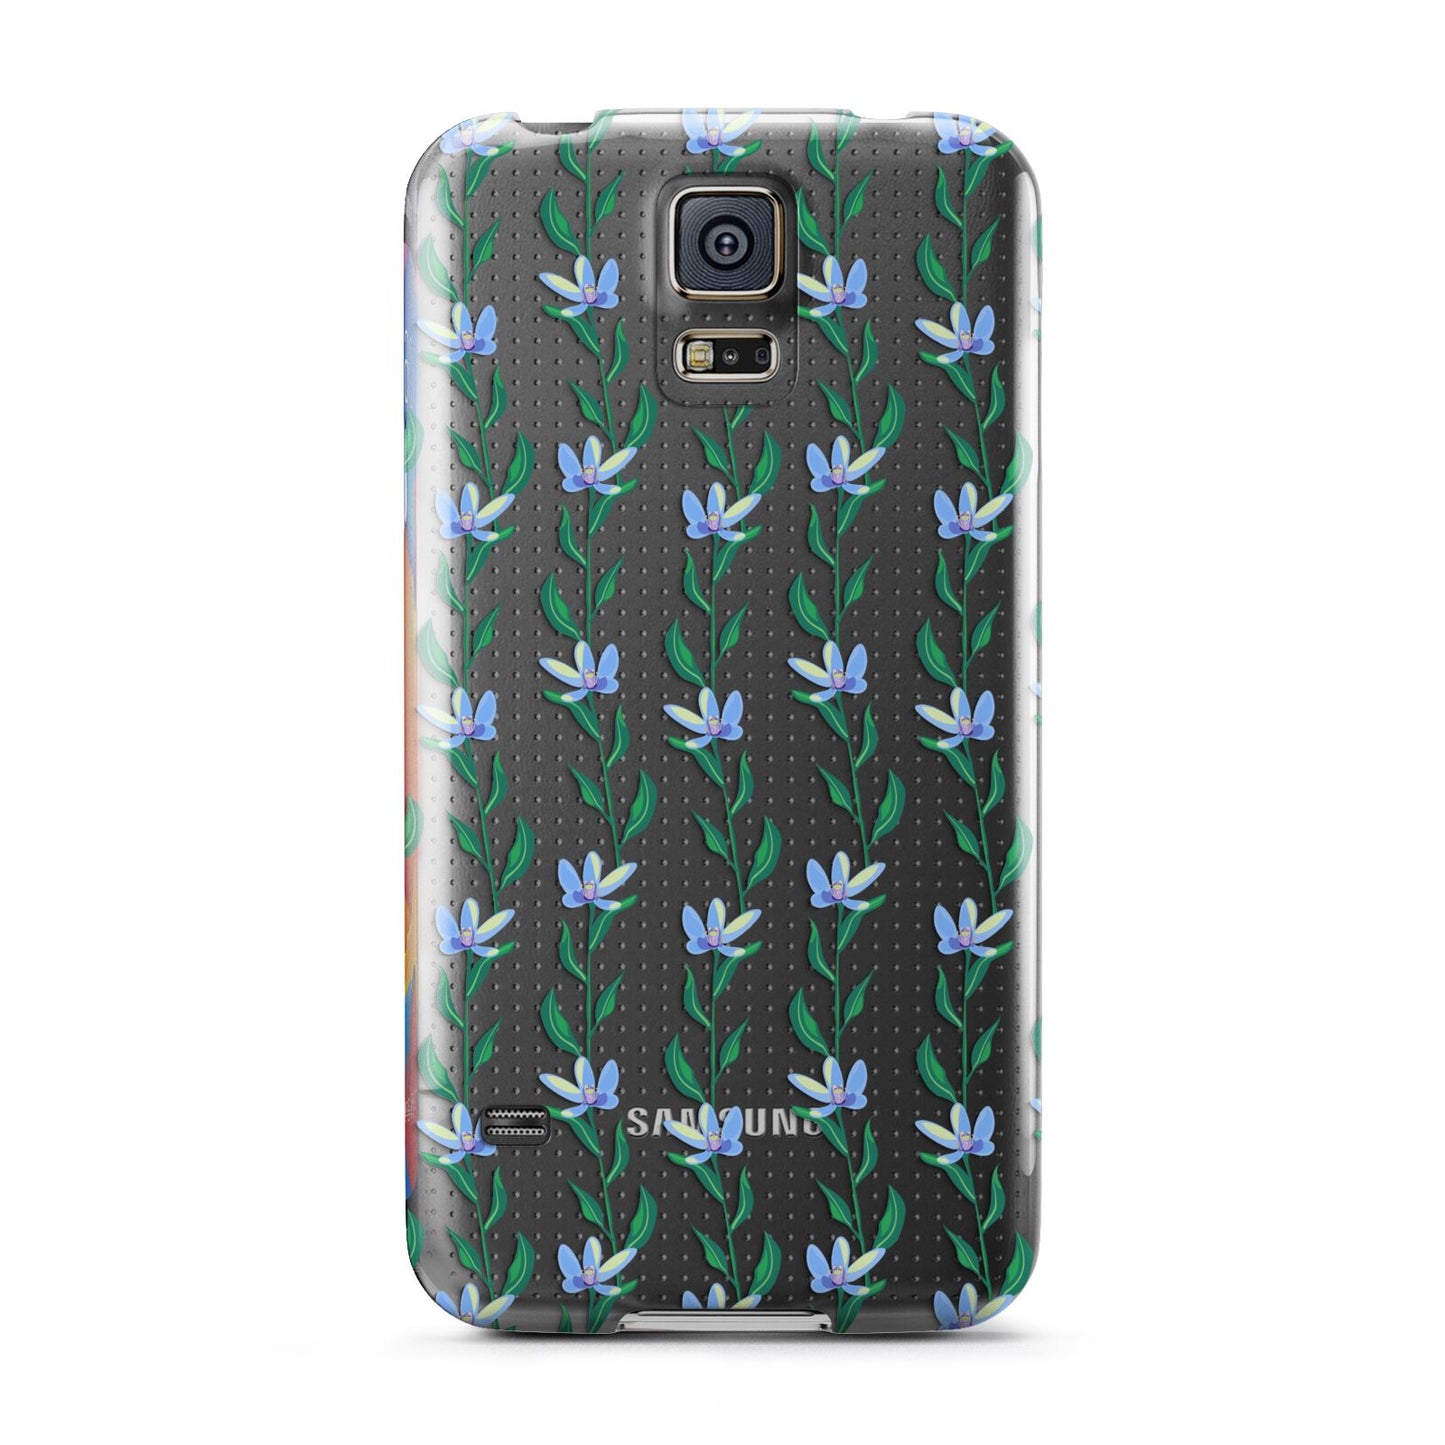 Flower Chain Samsung Galaxy S5 Case